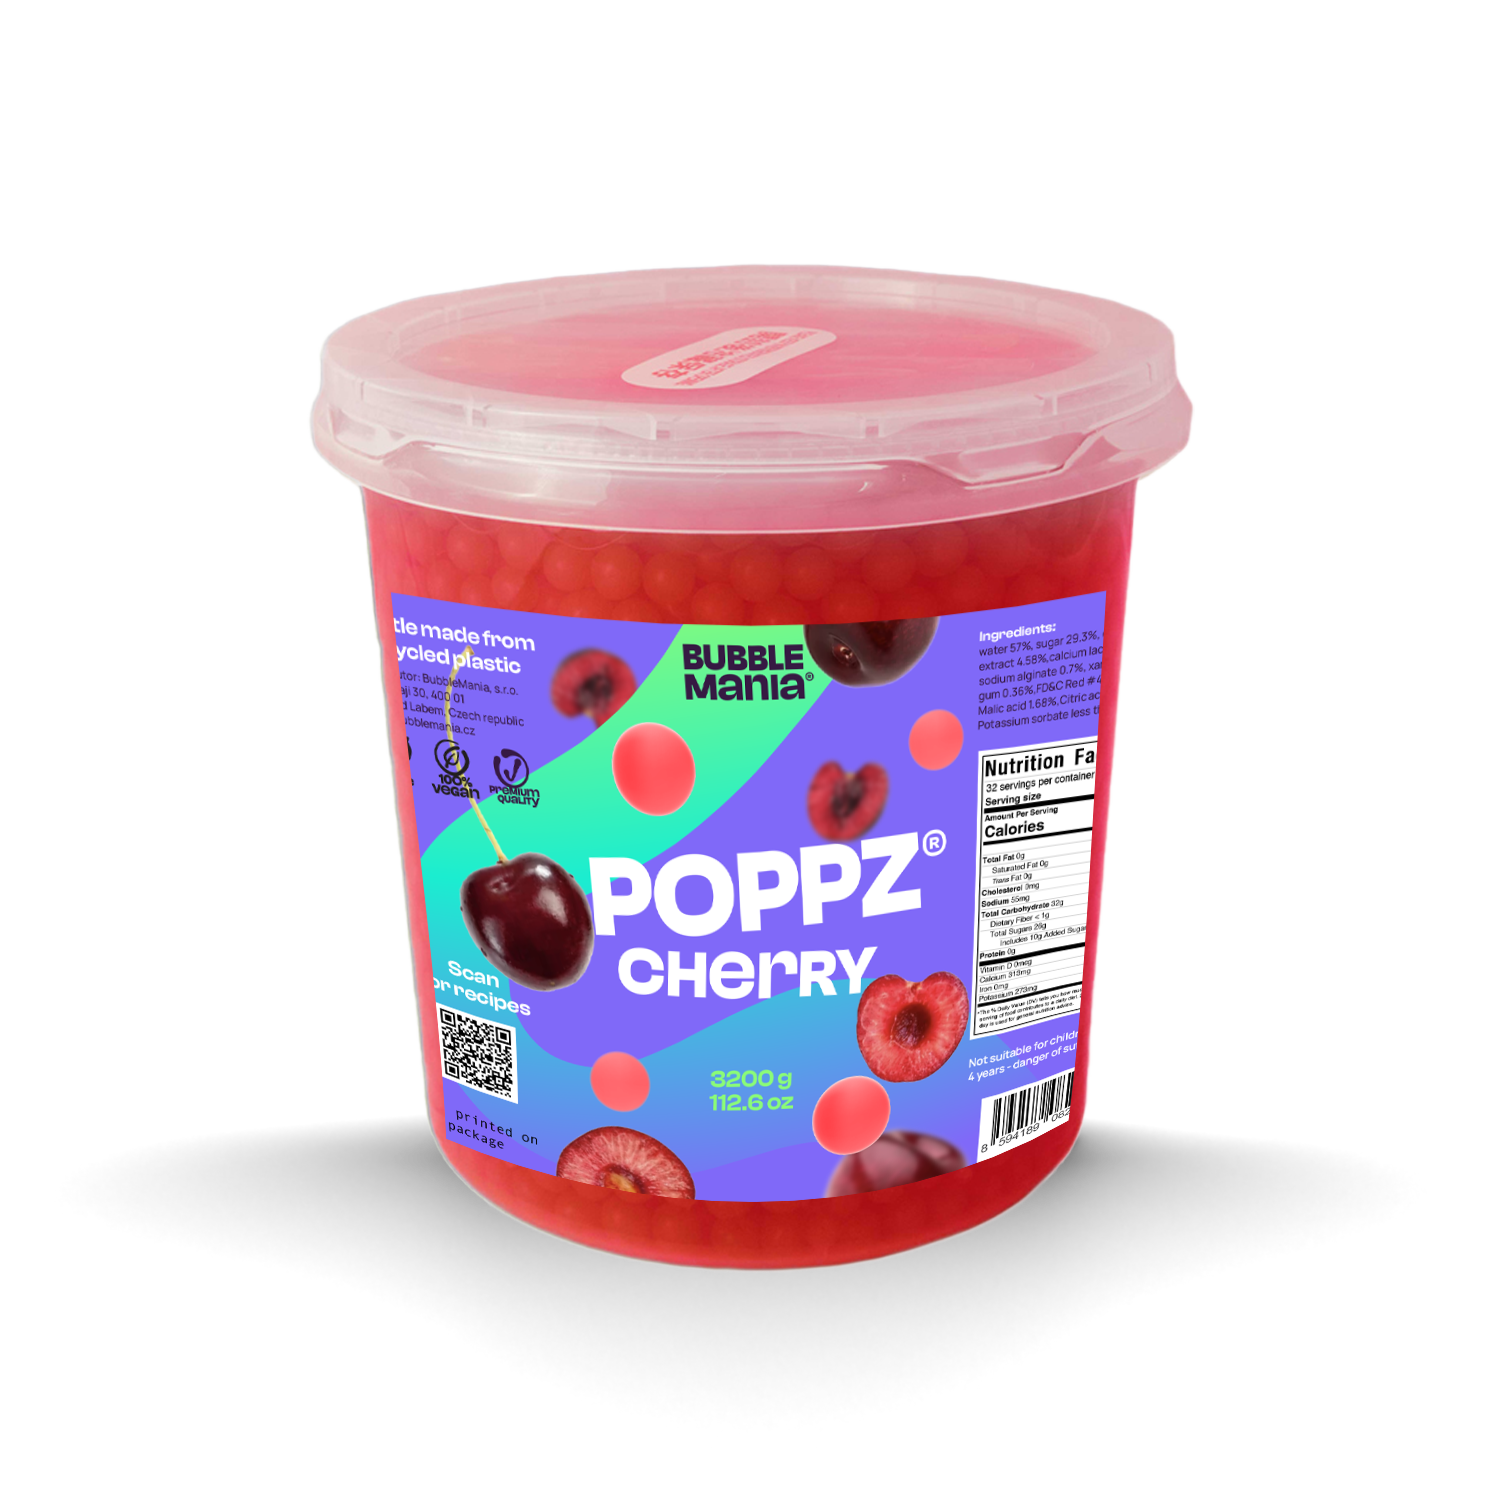 POPPZ Cherry Kit with Tapioca scoop and 10 straws